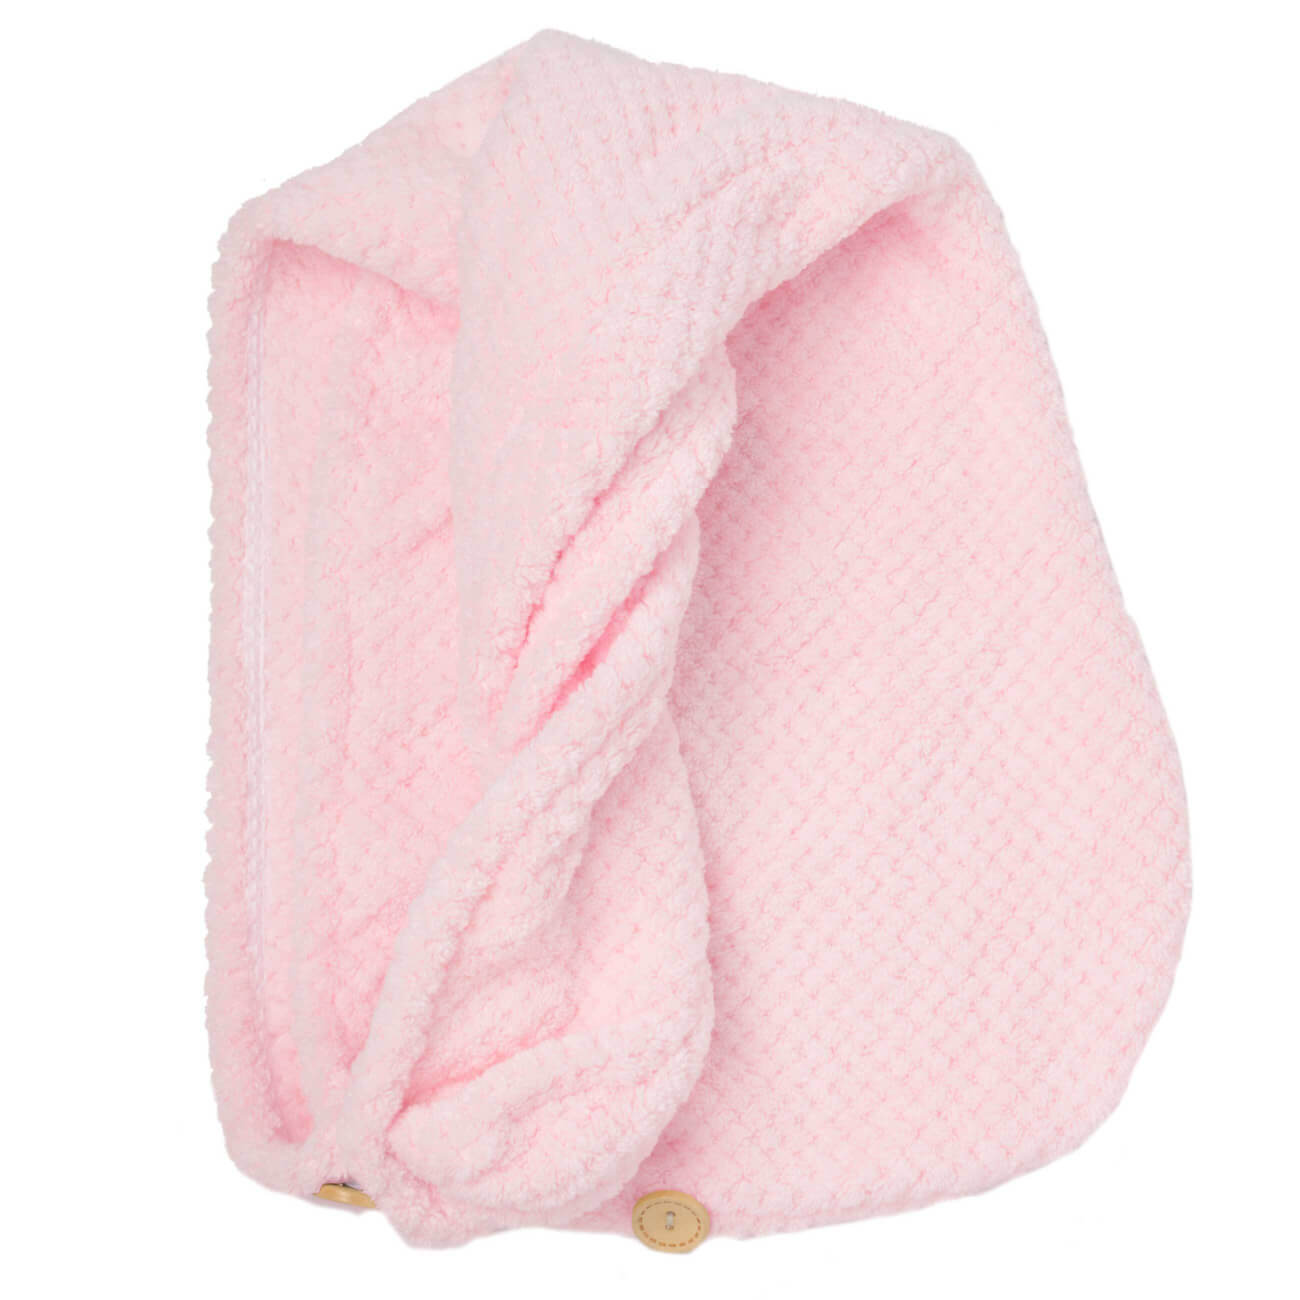 Полотенце-тюрбан для волос, 62х24 см, микроволокно, розовое, Fiber spa - фото 1